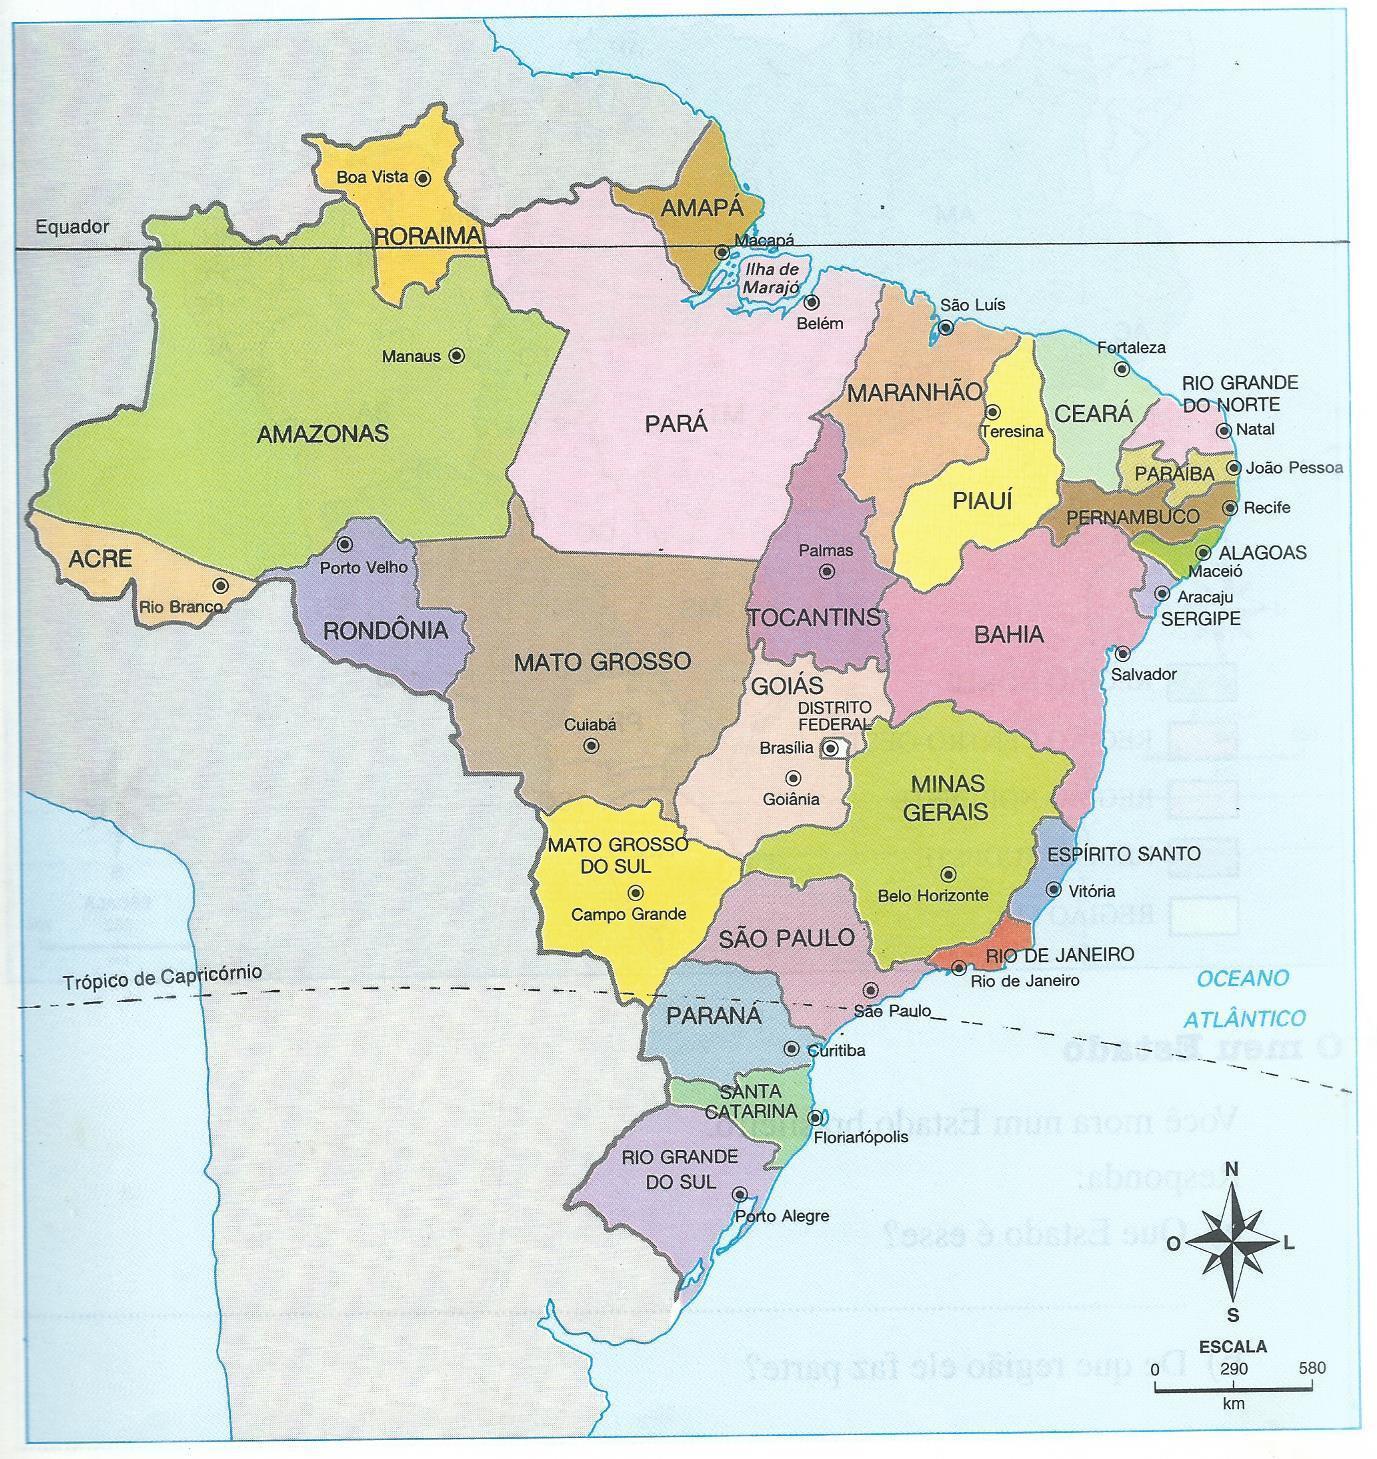 QUIZ das capitais dos Estados do BRASIL. PERGUNTAS E RESPOSTAS DAS